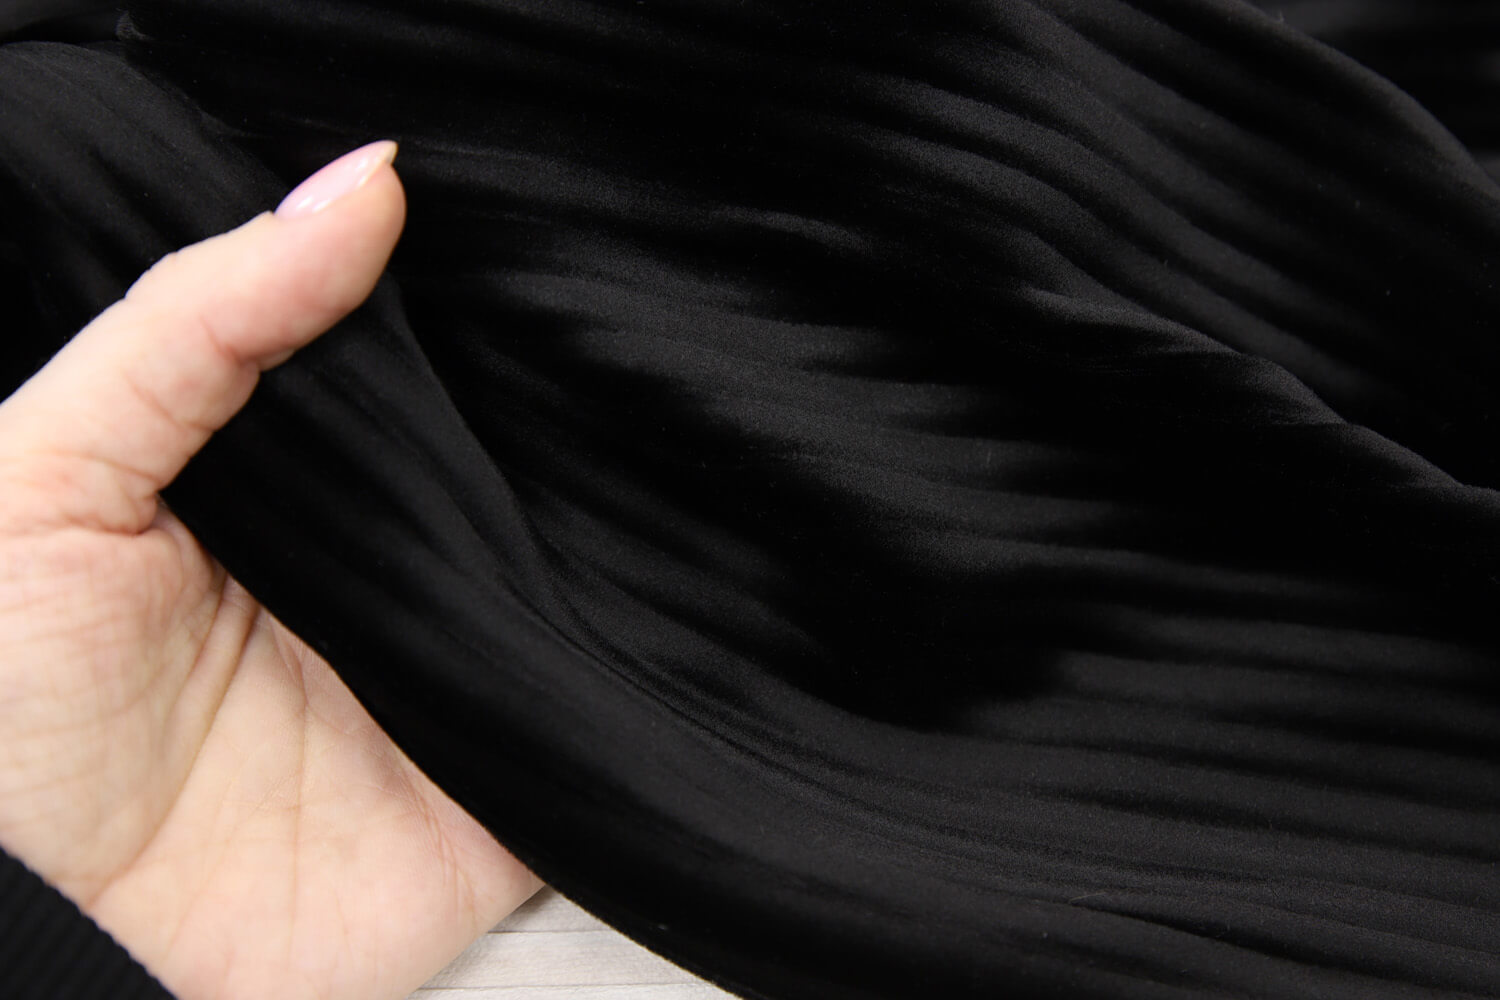 Велюр плиссе Anna Sui, цвет Черный, фото 1